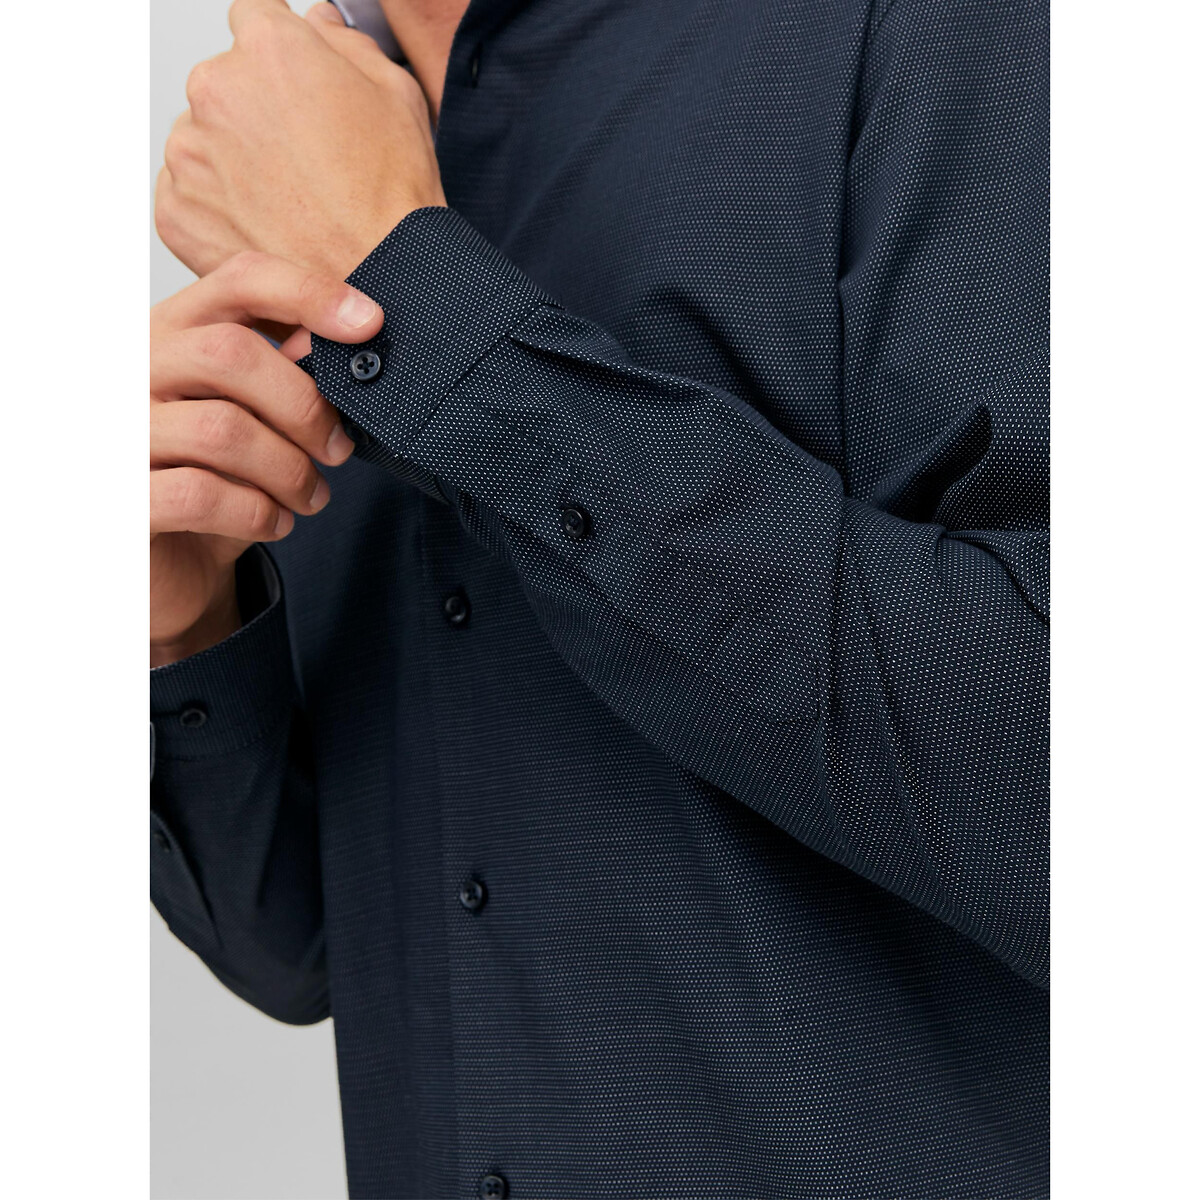 Рубашка Слим из ткани стрейч XL синий LaRedoute, размер XL - фото 4